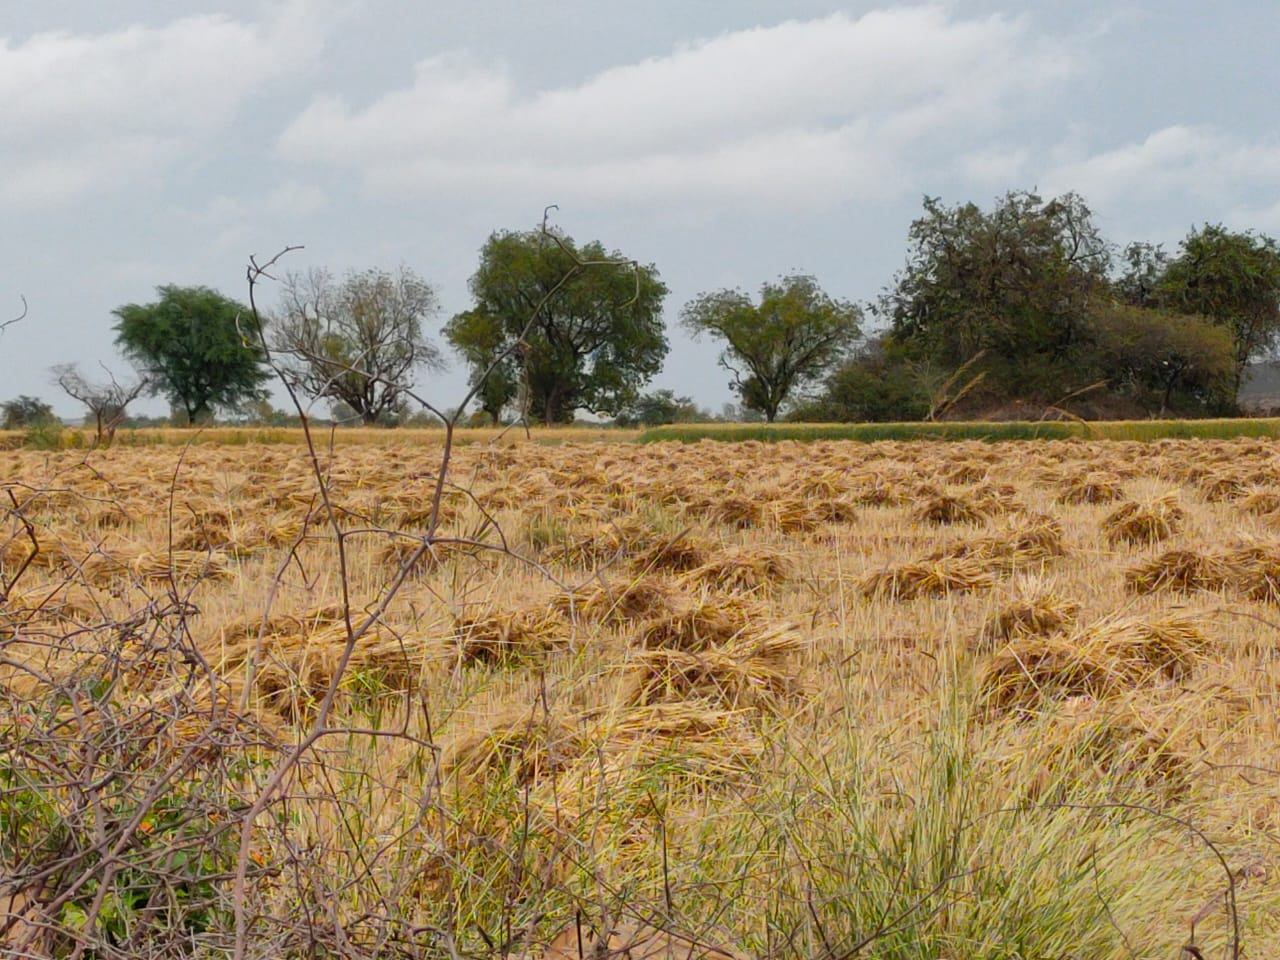  तेज हवा ने कई खेतों में बिछा दी गेहूं की फसल  Rain water filled in the harvested fields, news in hindi, mp news, datia news